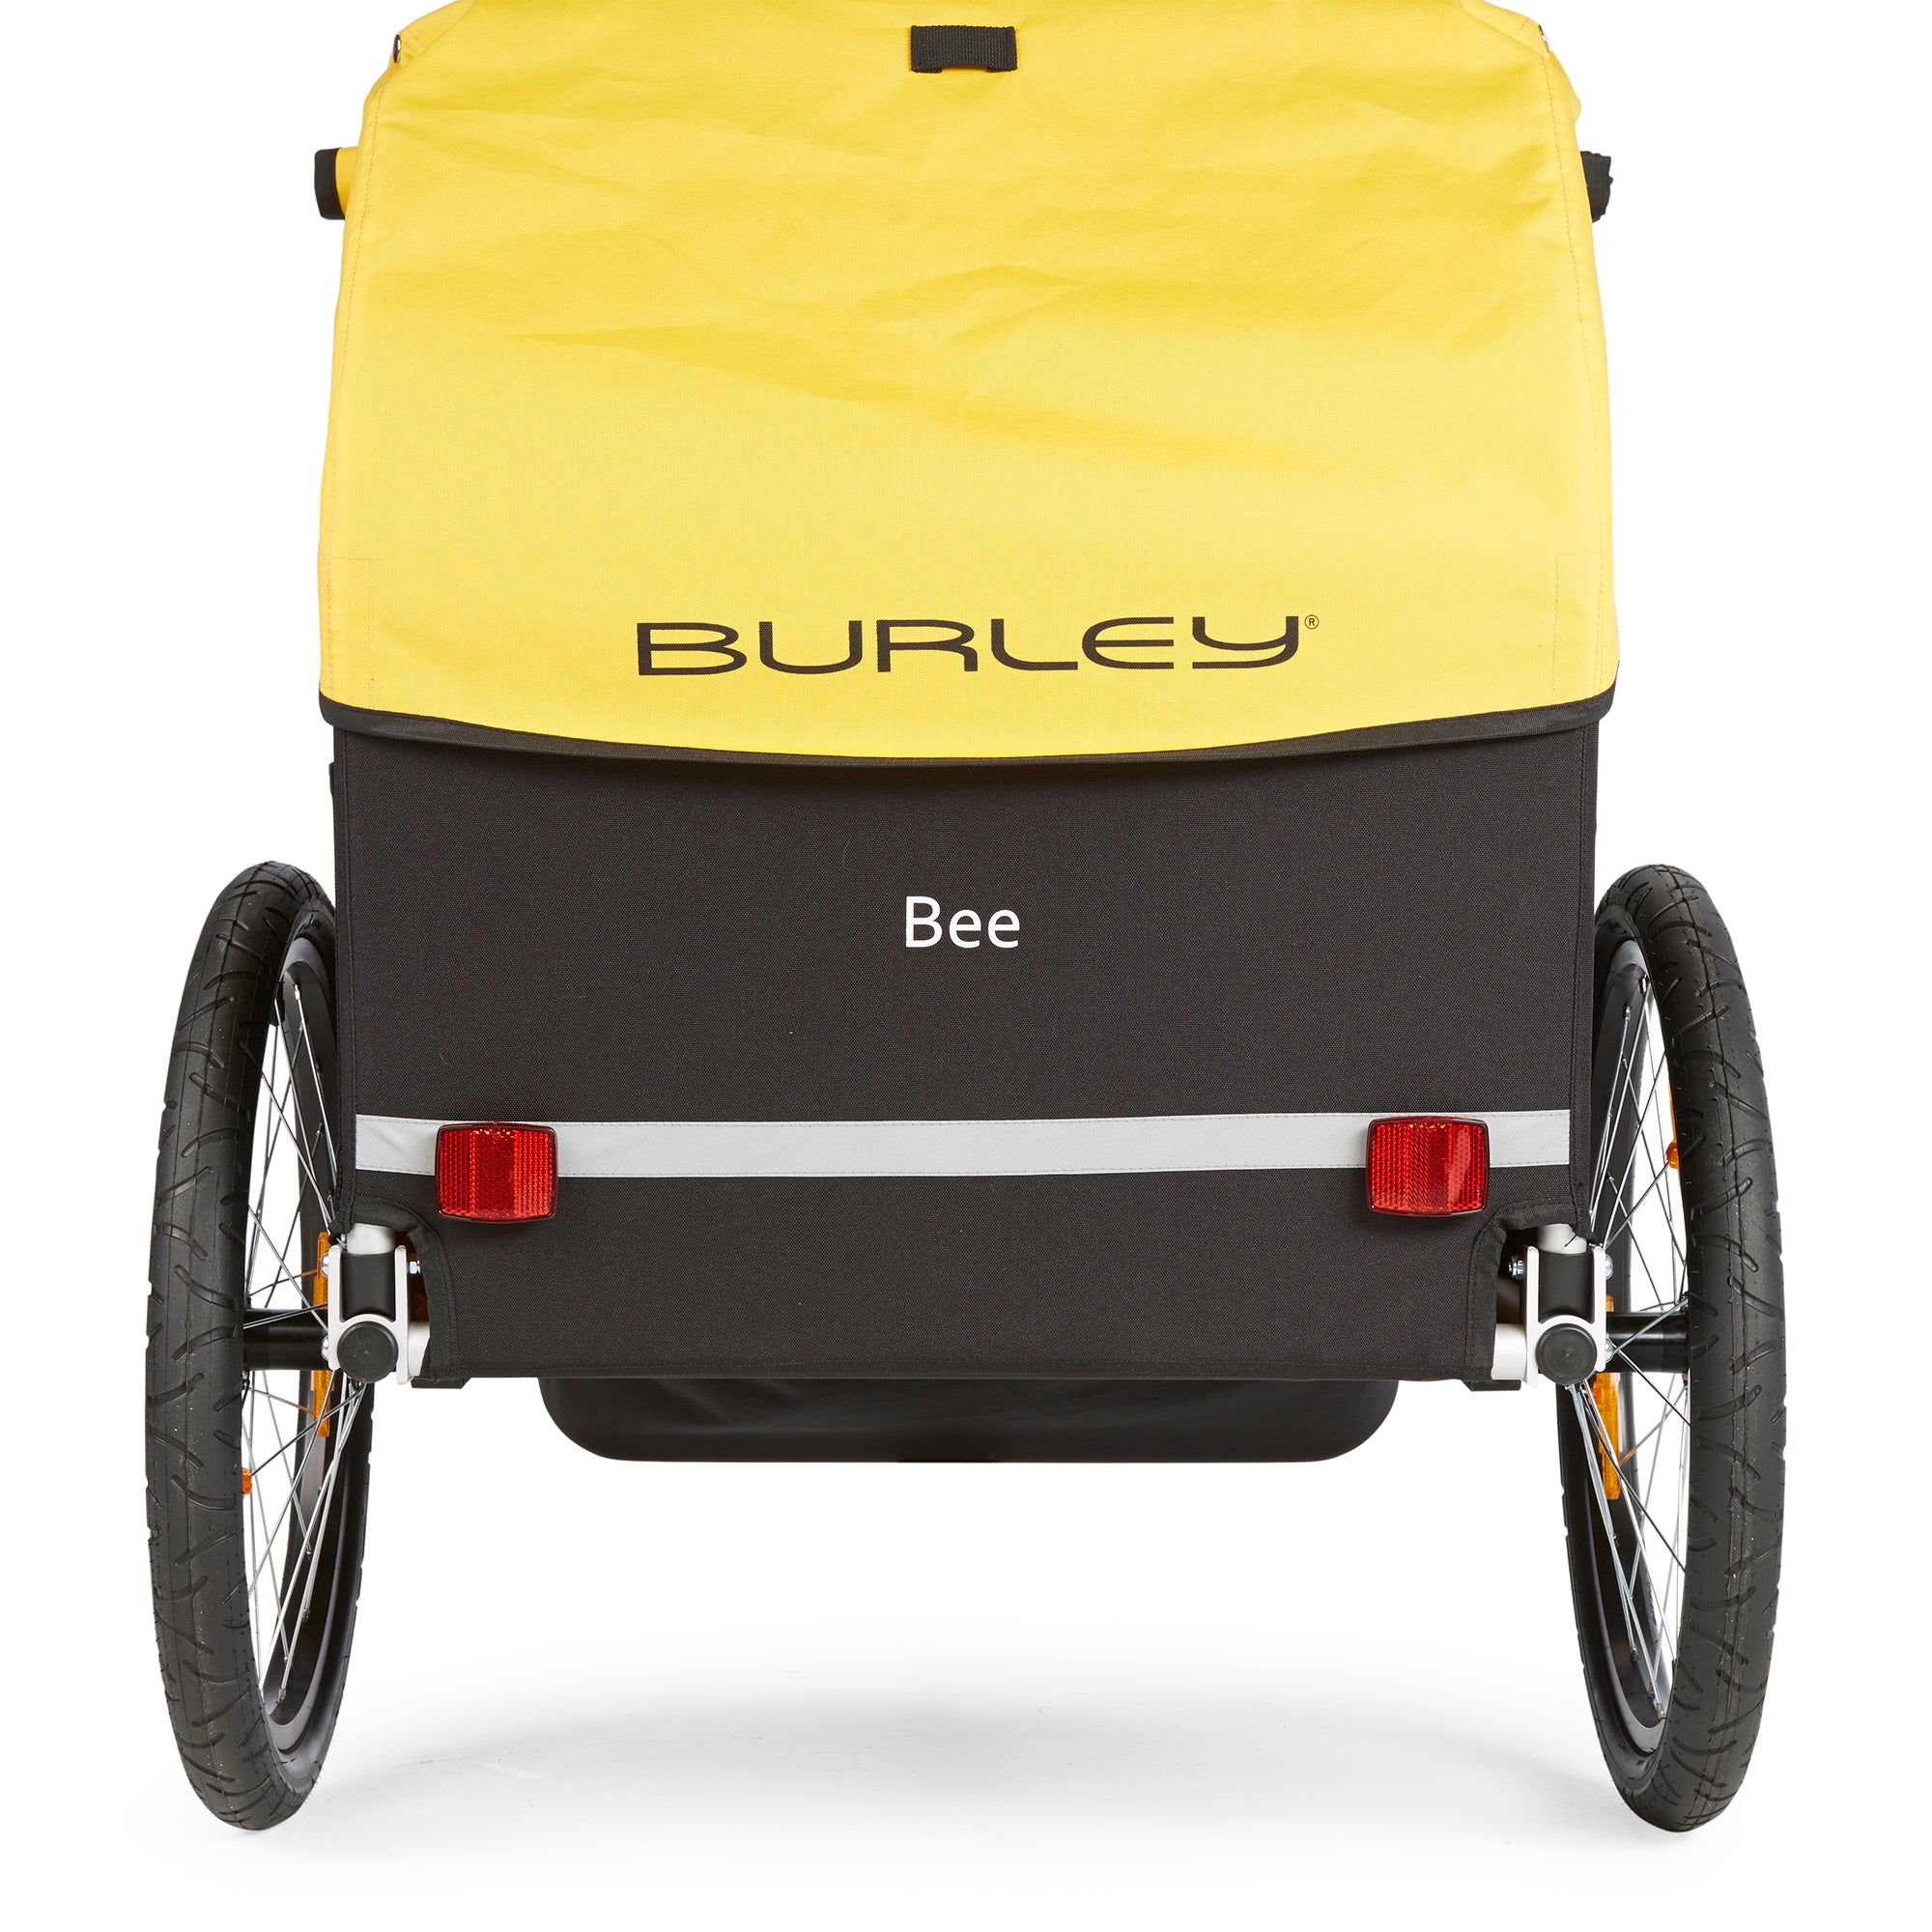 BURLEY Bee